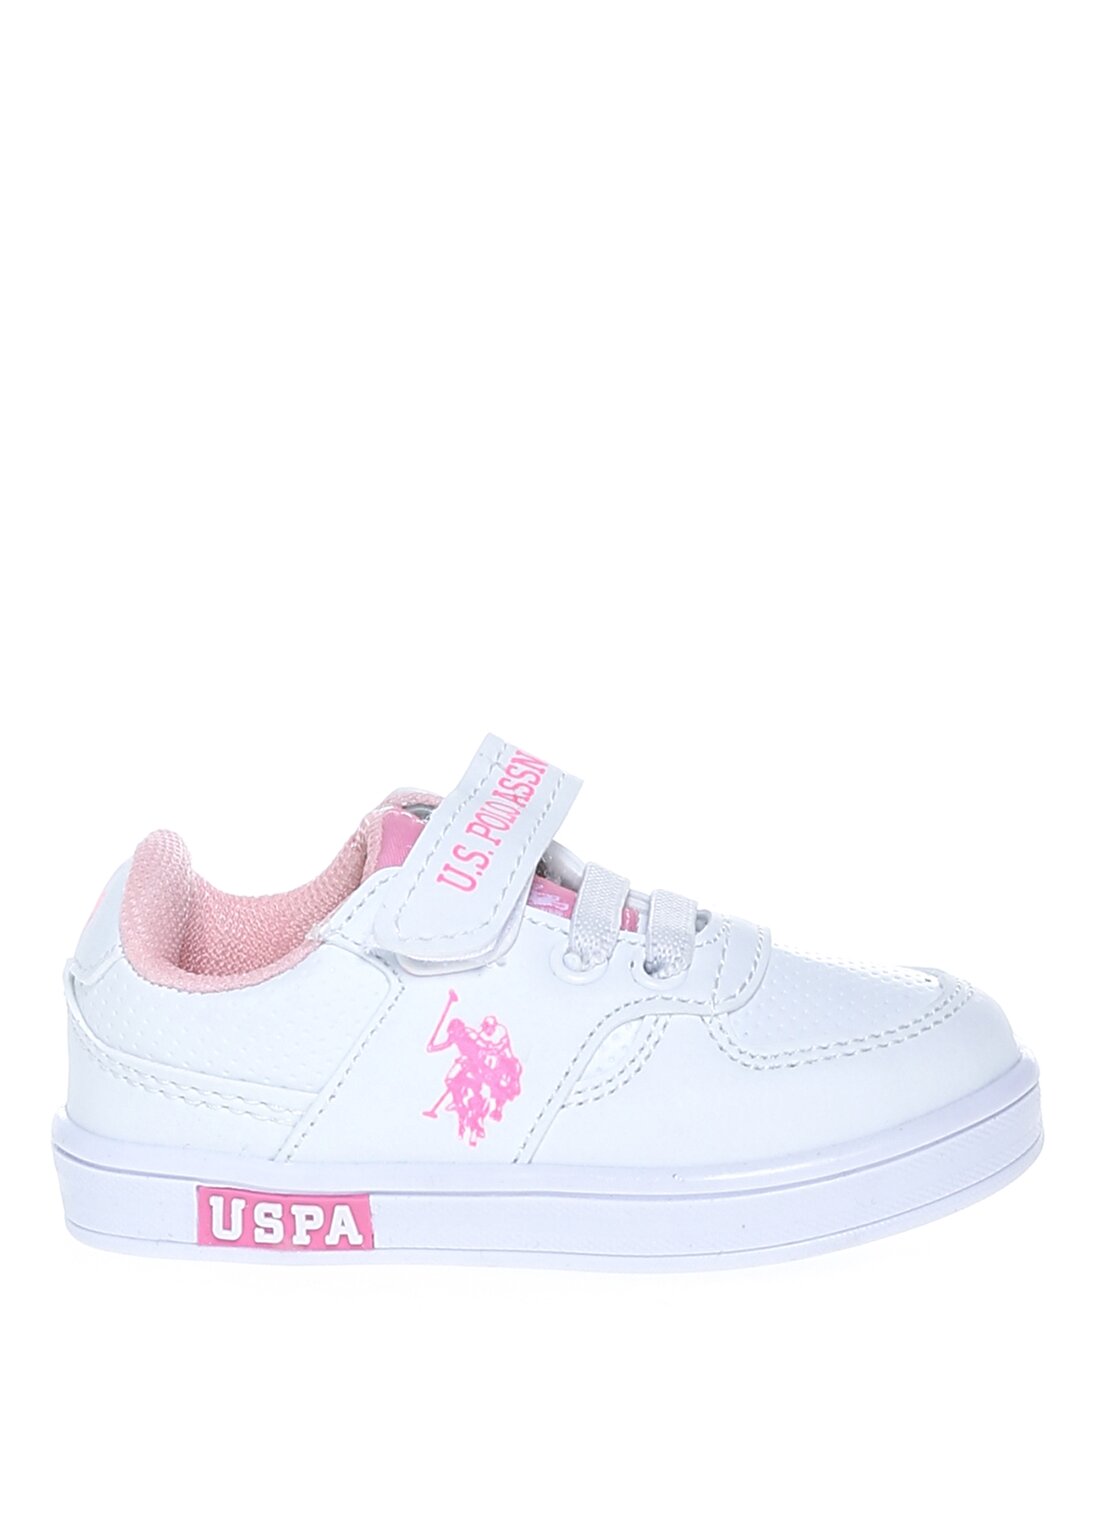 U.S. Polo Assn. AS00850718 Cameron Beyaz Kız Çocuk Yürüyüş Ayakkabısı